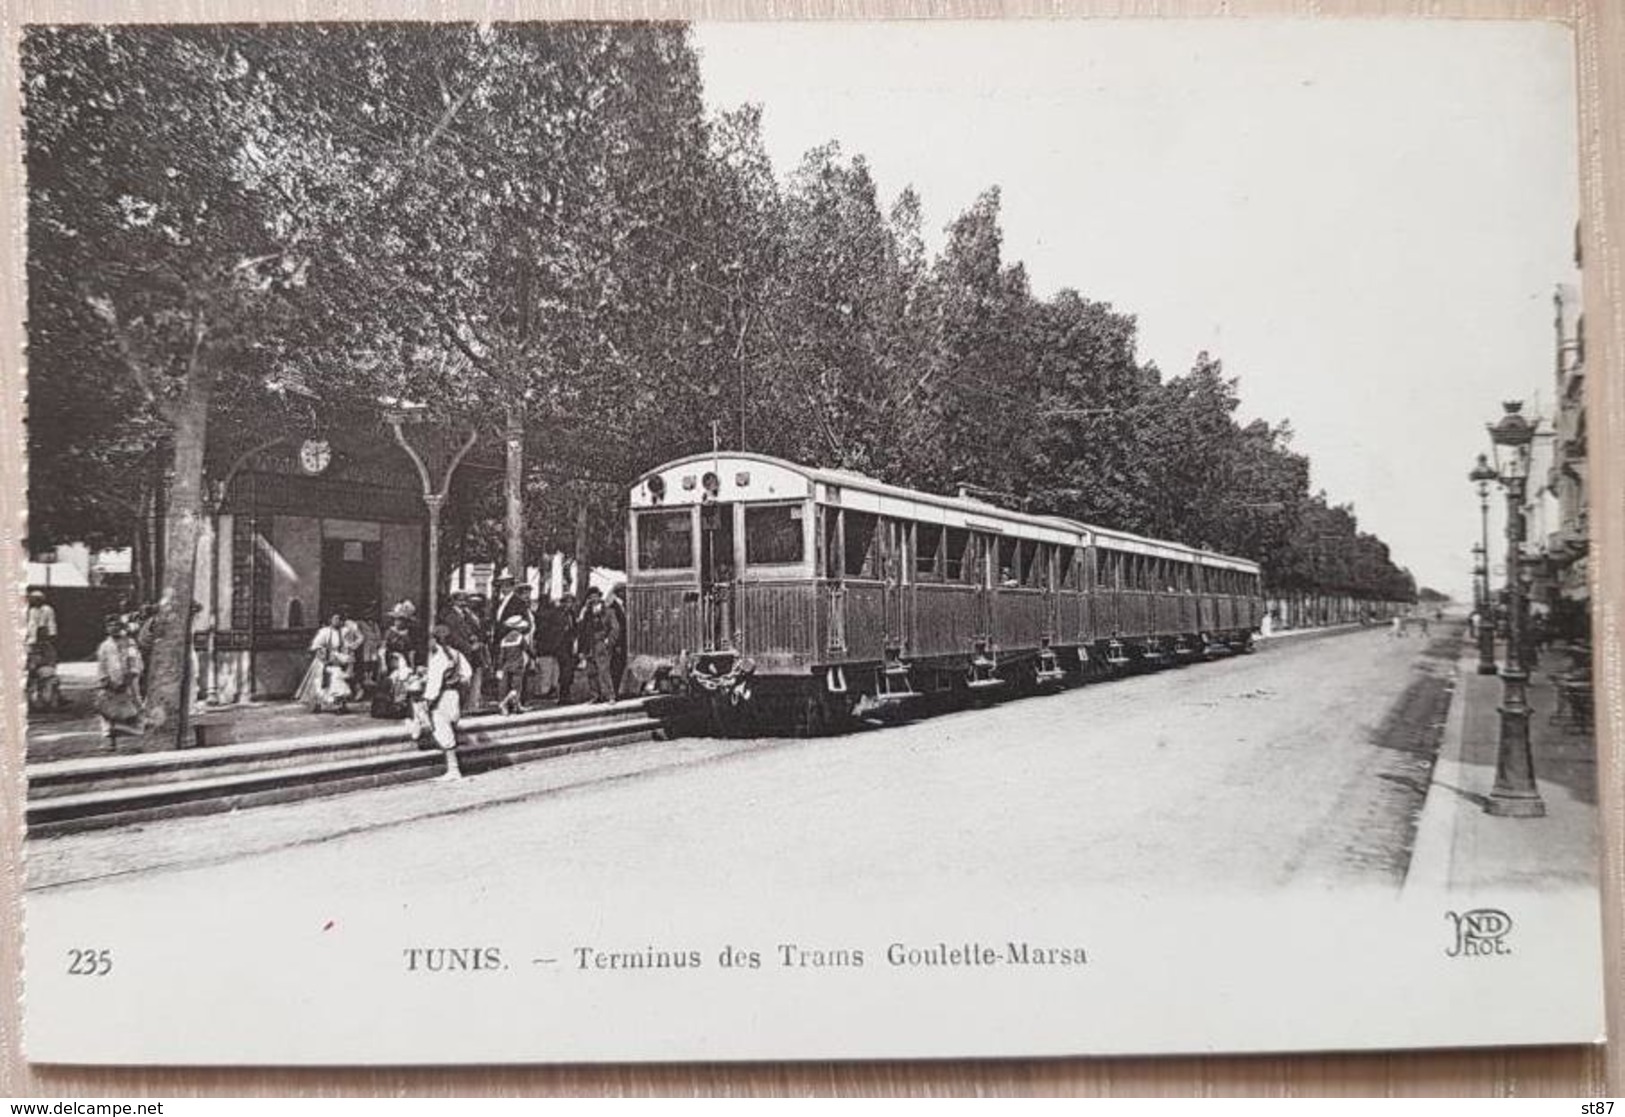 Tunis Trams - Tunisia